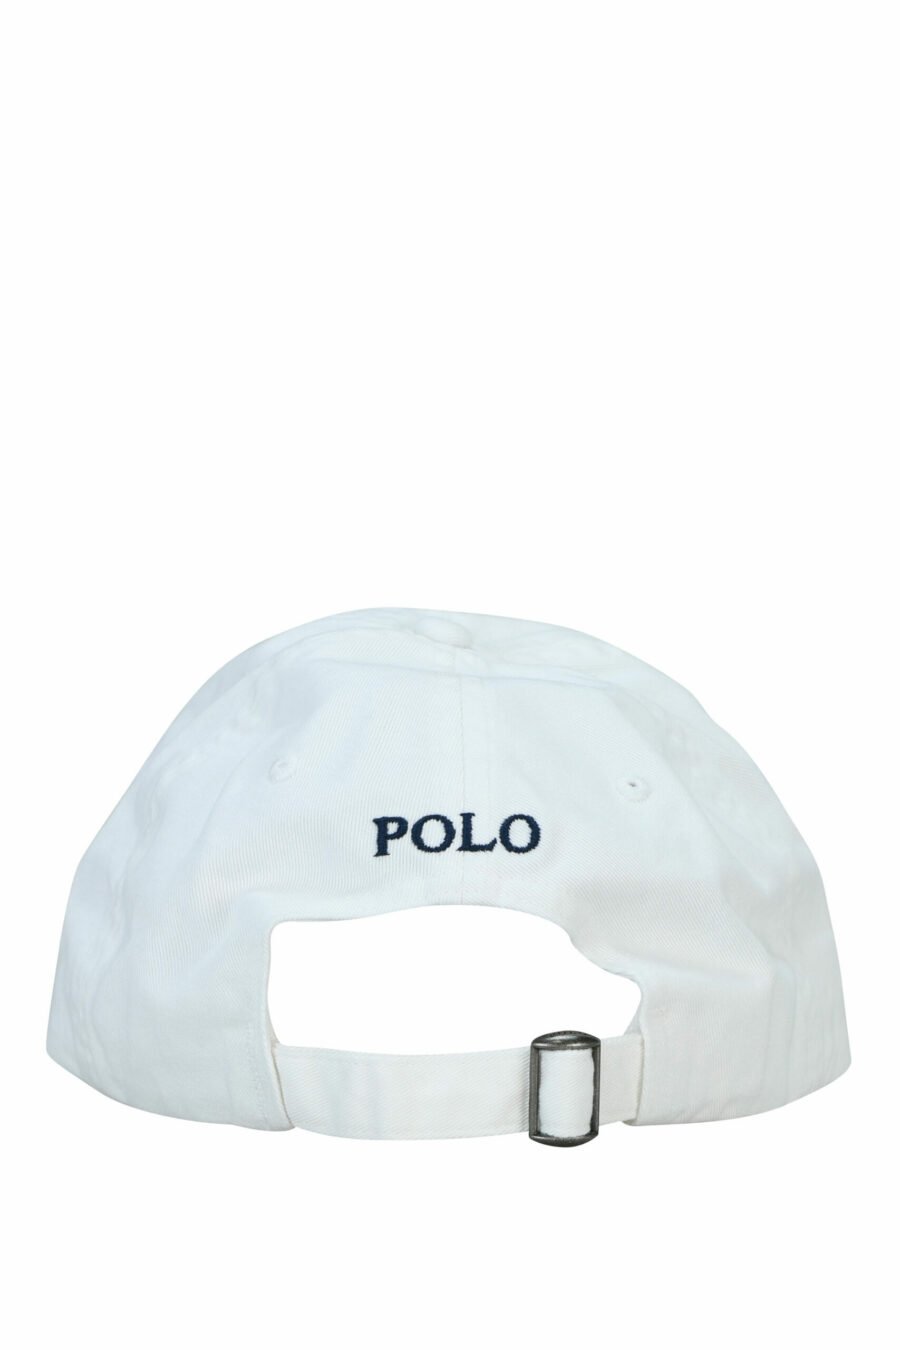 Weiße Mütze mit Mini-Logo "Polo" - 3616531139408 1 skaliert